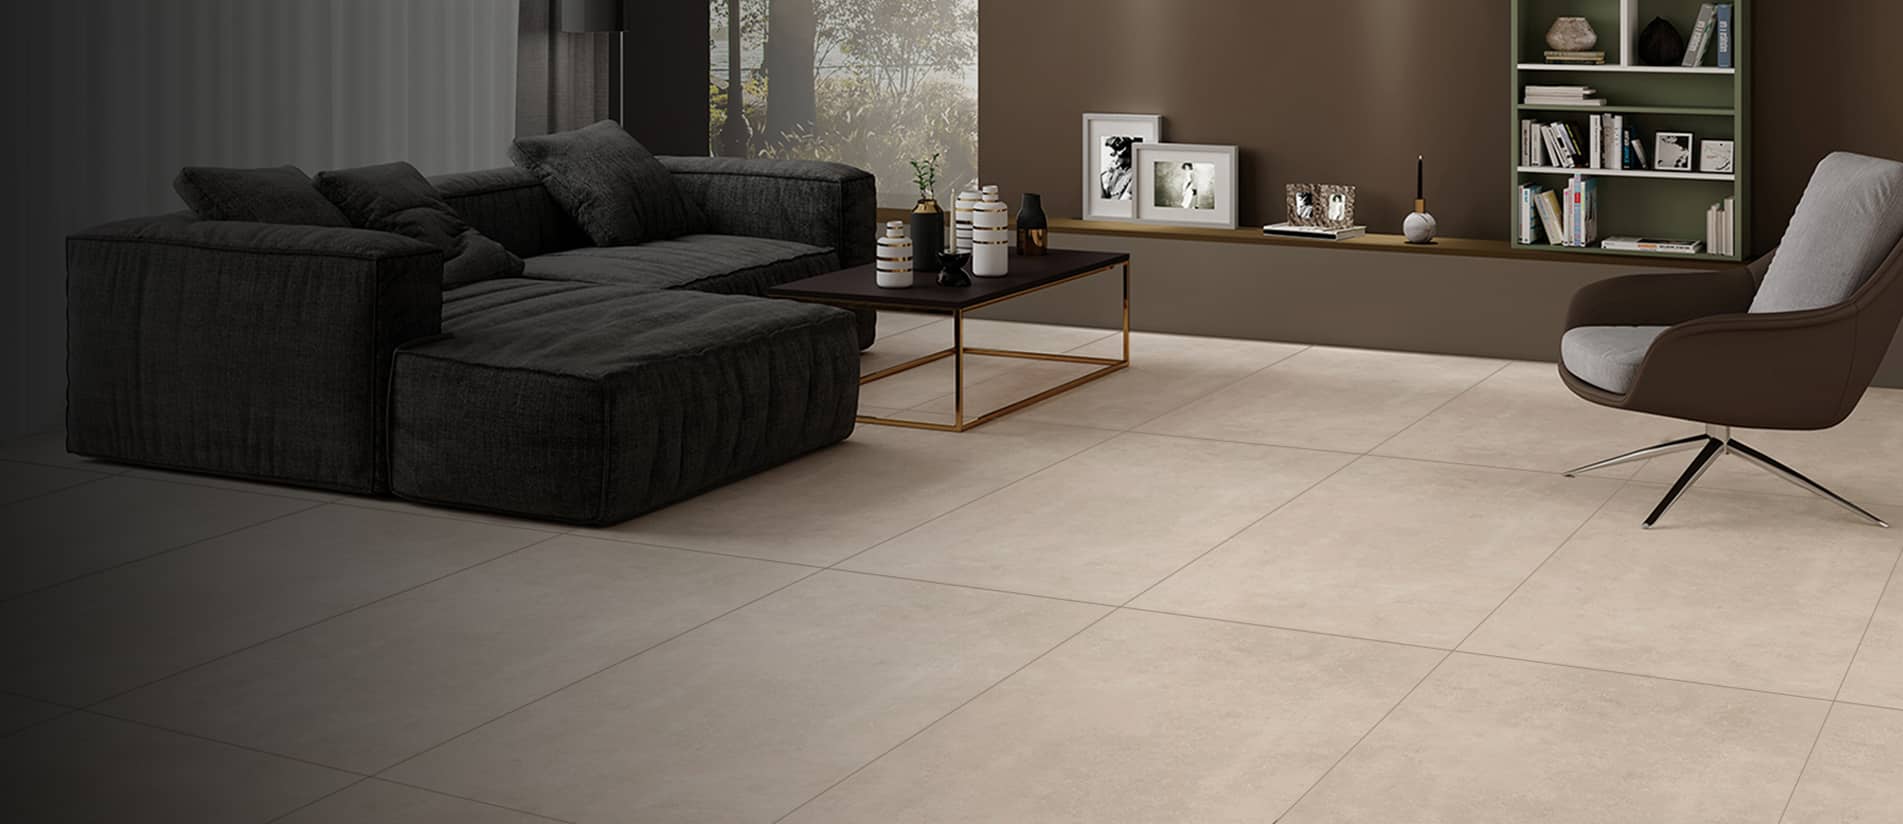 somany floor tiles design